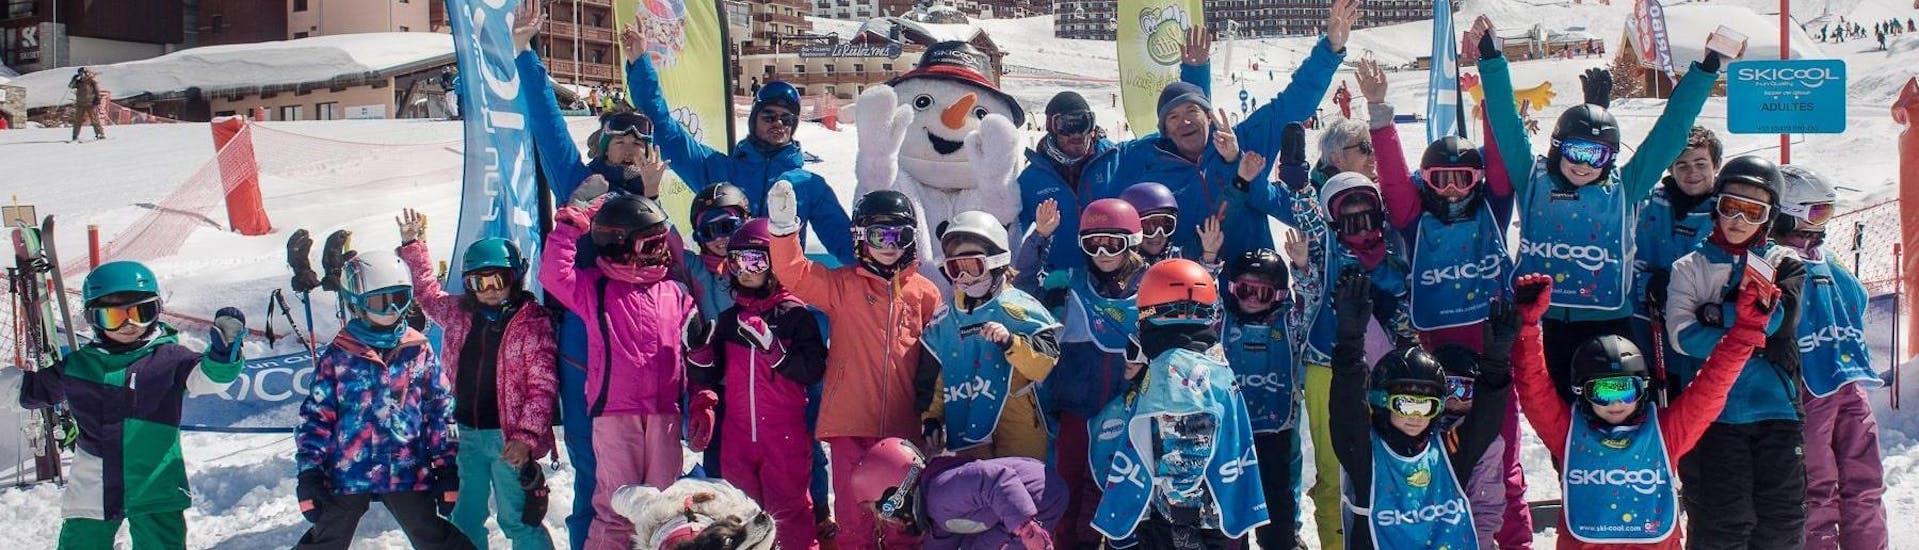 Eine Gruppe von Kindern freut sich darauf, ihren Skikurs bei der Skischule Ski Cool im Skigebiet von Val Thorens zu beginnen.